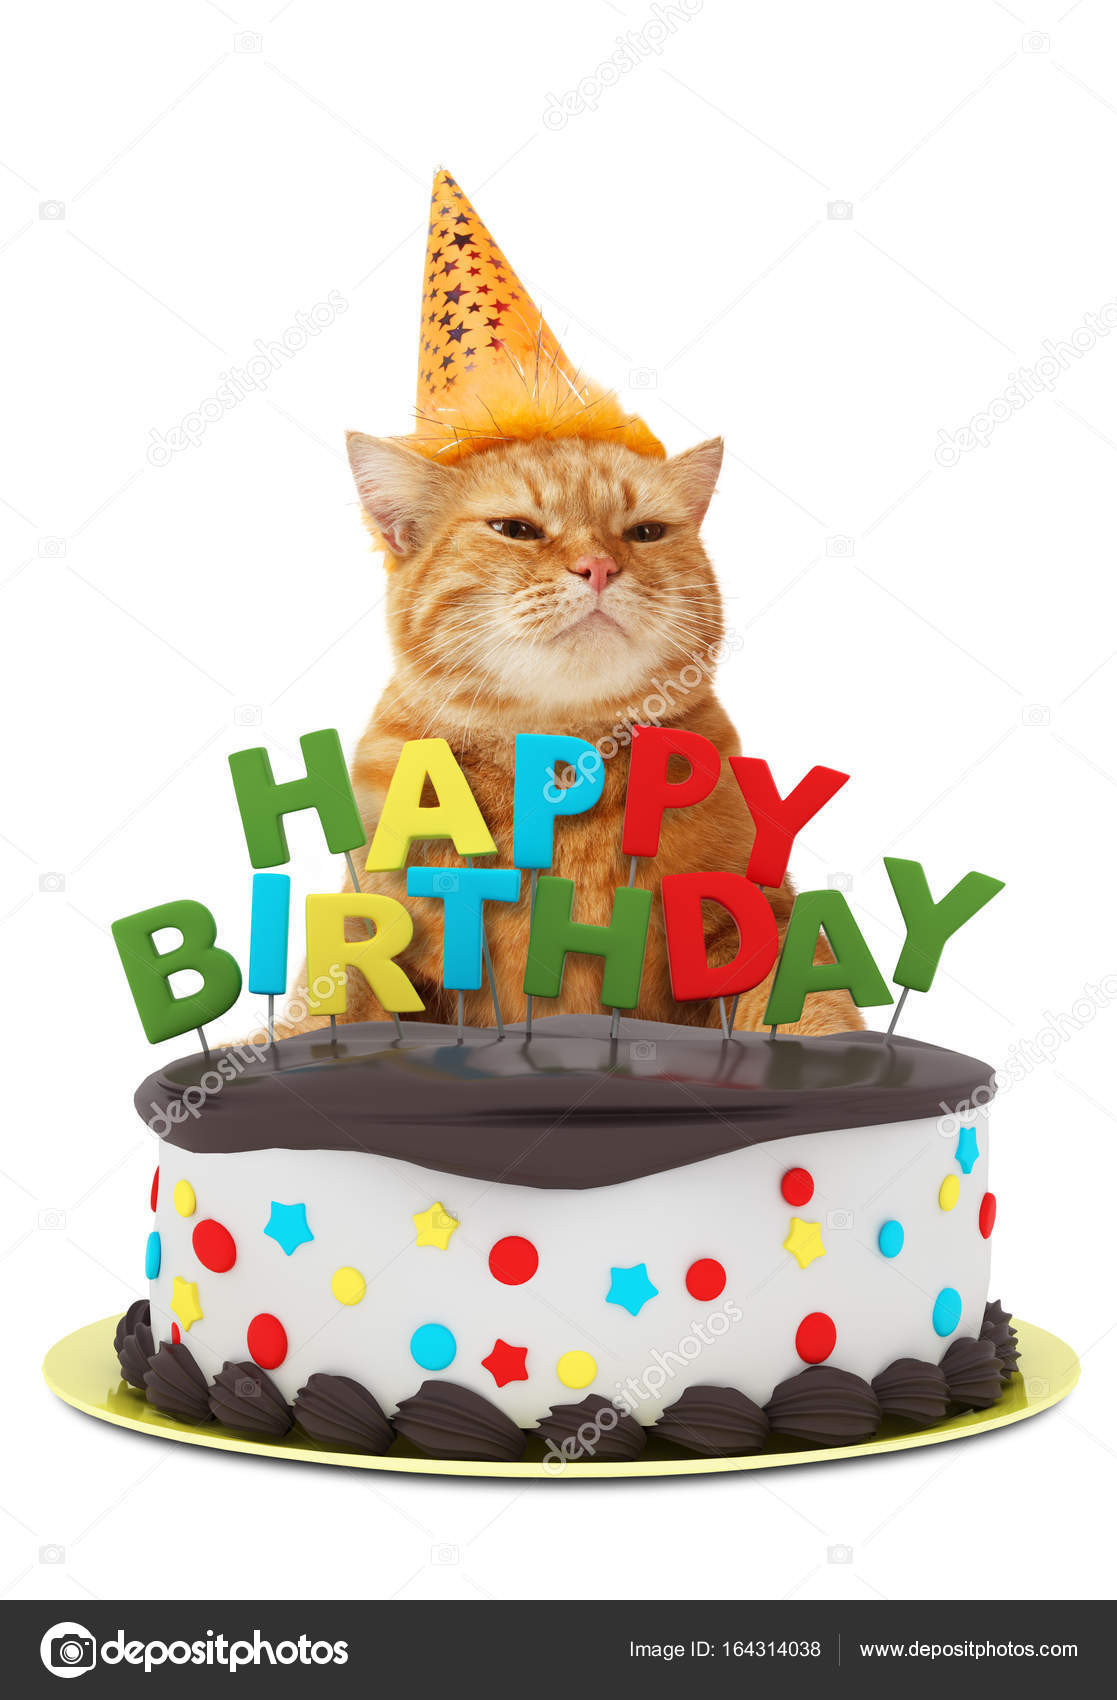 Happy Birthday Cake Funny
 Birthday funny cat